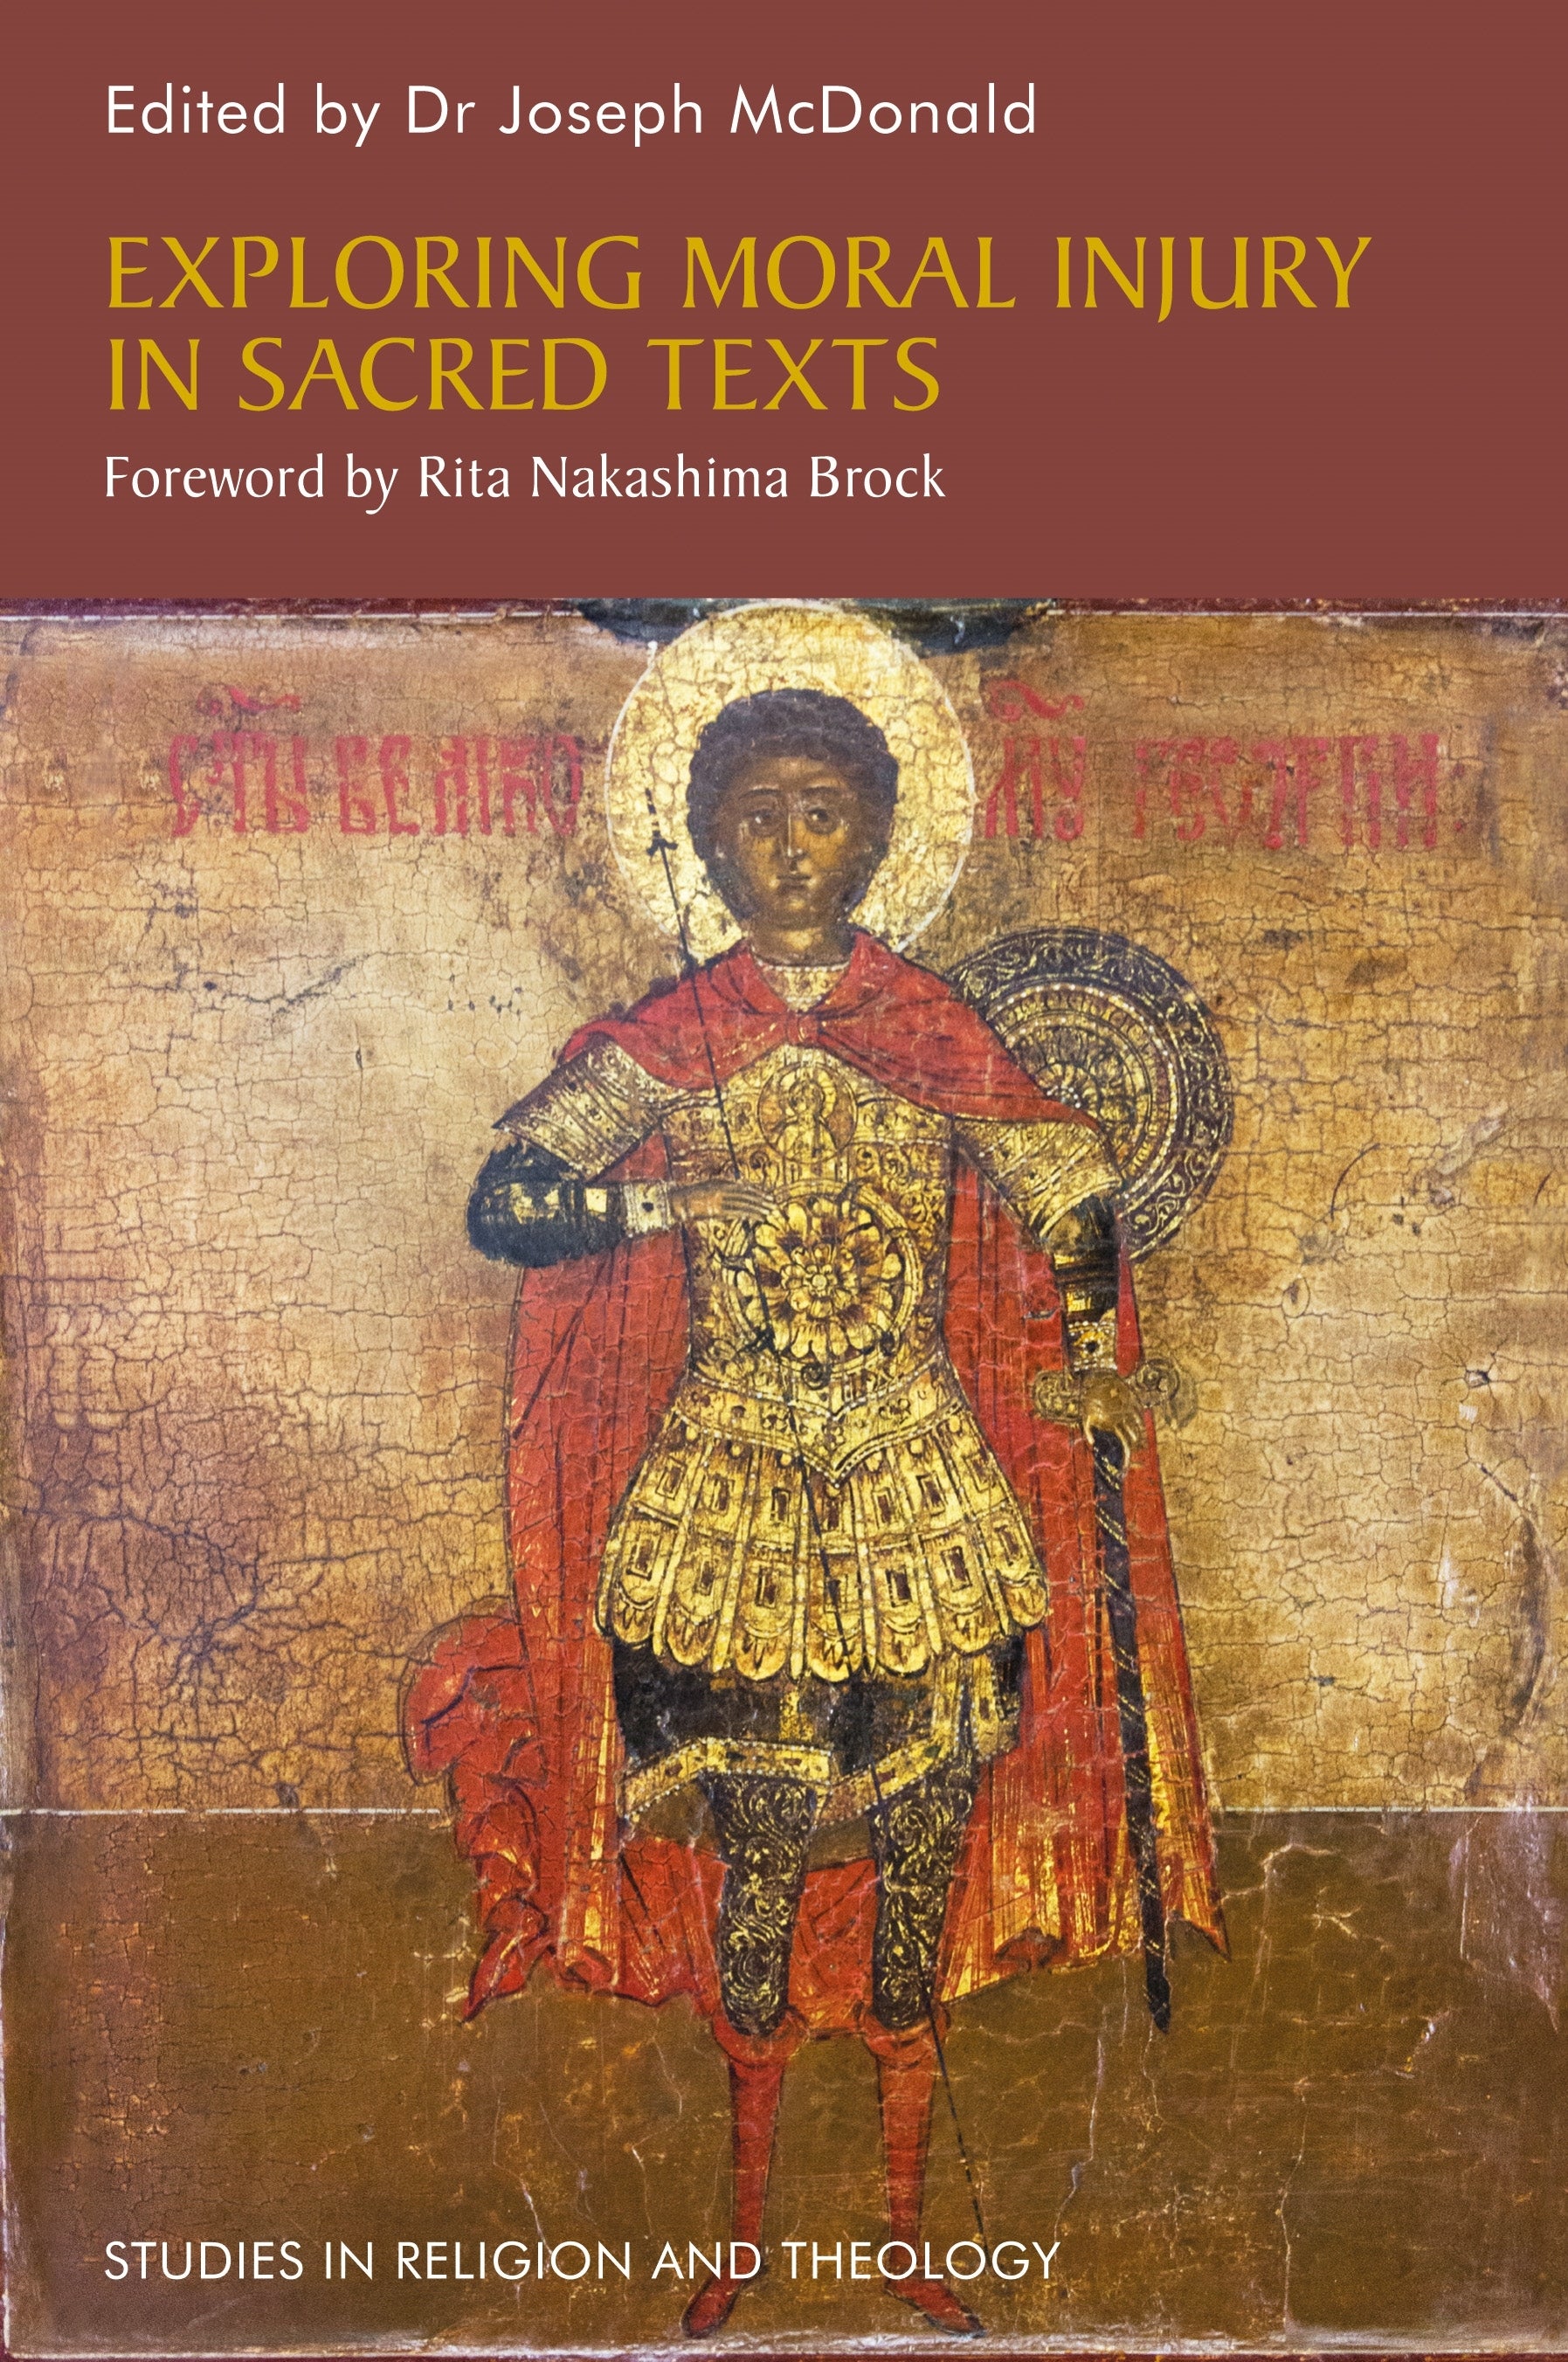 Exploring Moral Injury in Sacred Texts by Joseph McDonald, Rita Nakashima Brock, No Author Listed